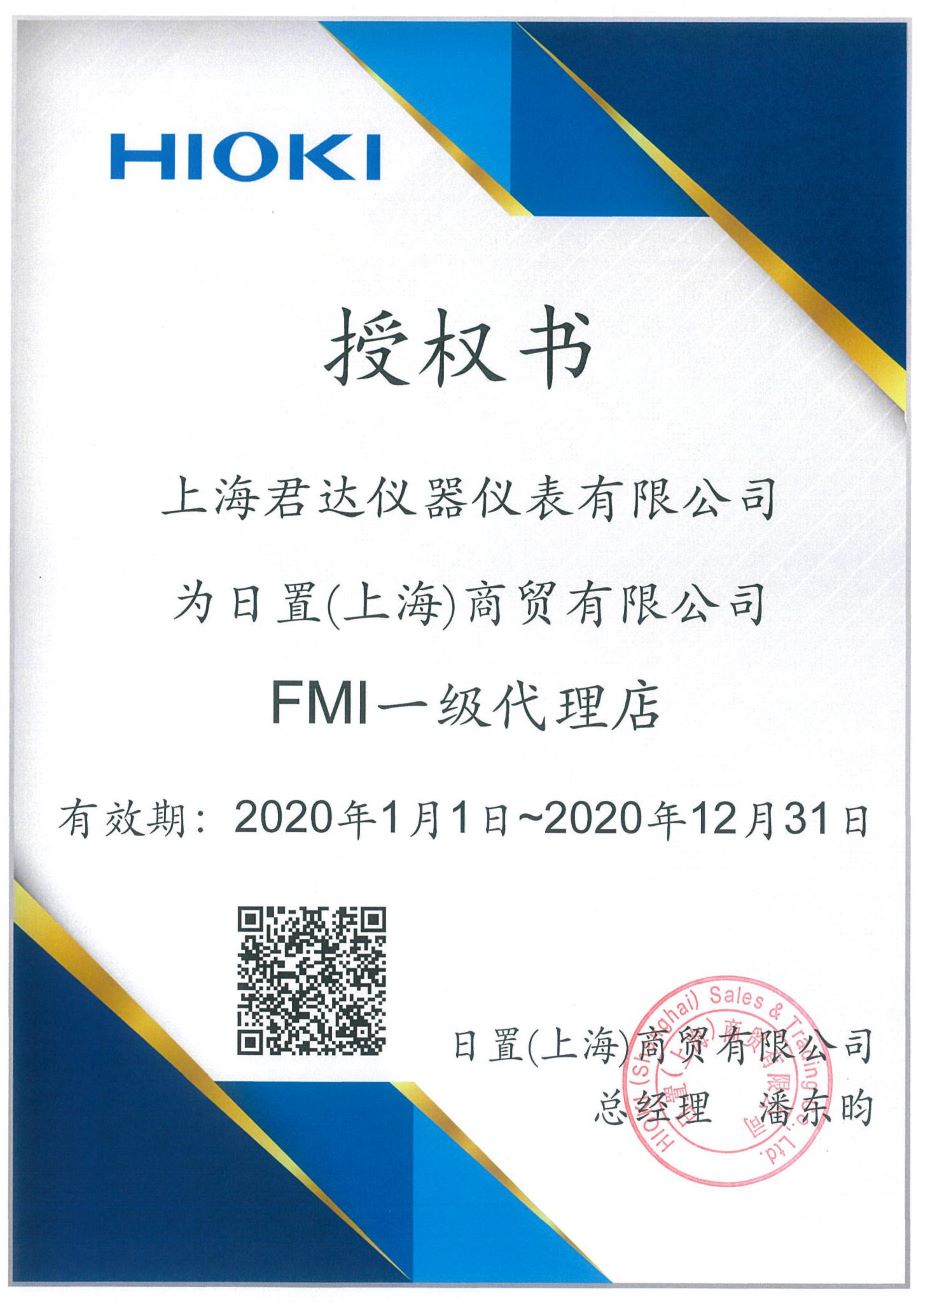 hioki上海日置商贸授权君达的代理证书